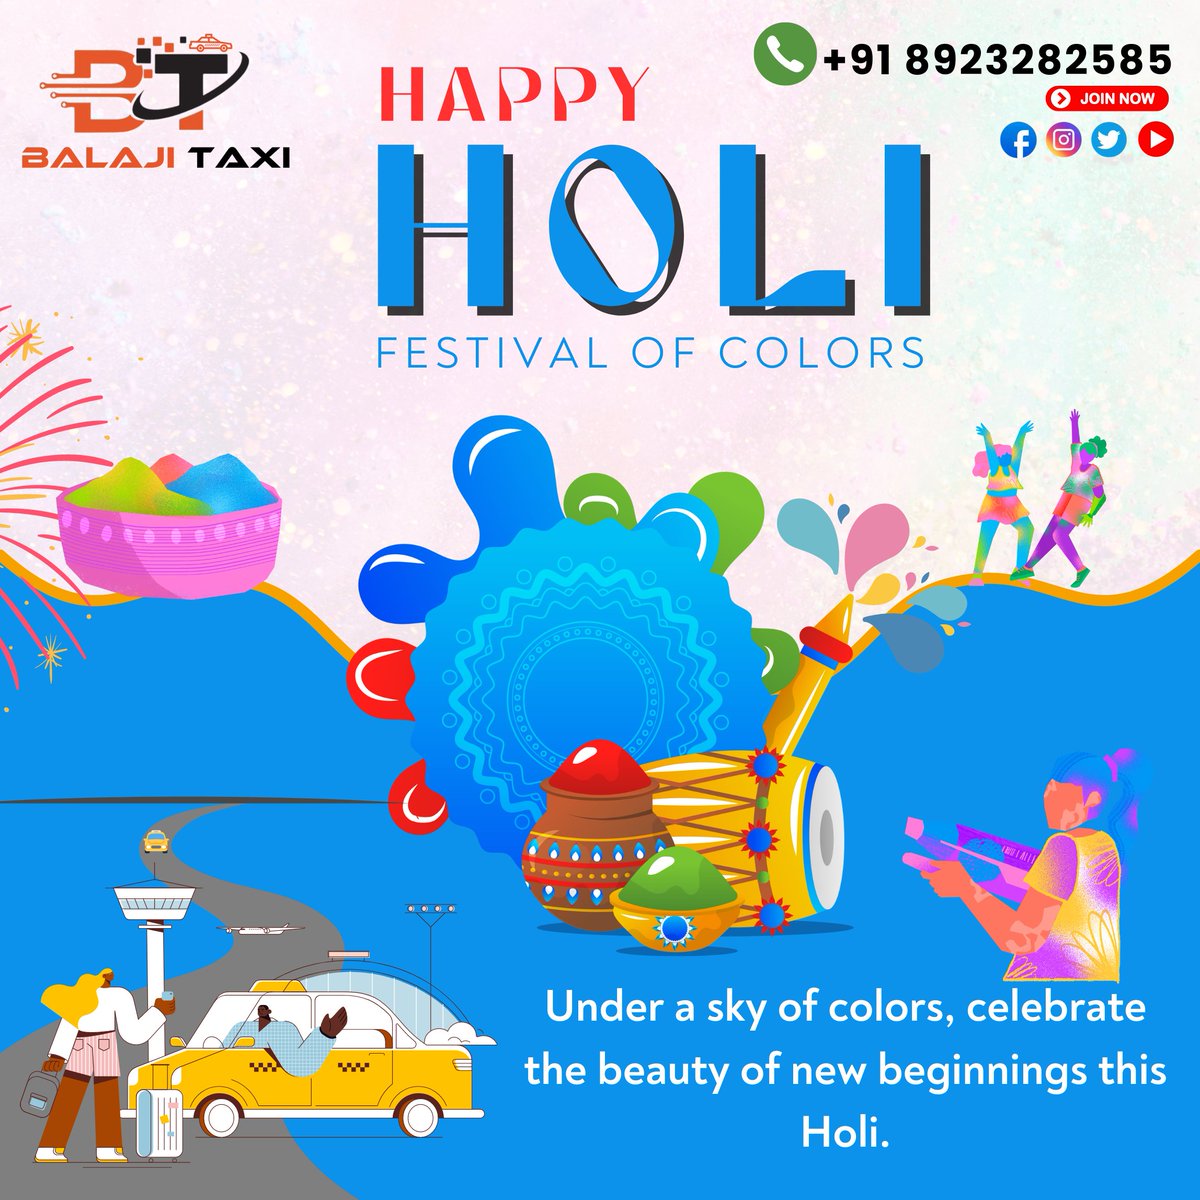 Bhartiye Products Wishes You a Happy and Colorful Holi!  #holireel #shortsholi #happyholi #holi #festivalofcolors #bhartiyeproducts #india #holi2024 #spring #festival #joy #friendship #colors #cultural #tradition #mumbai #delhi #indiafestival